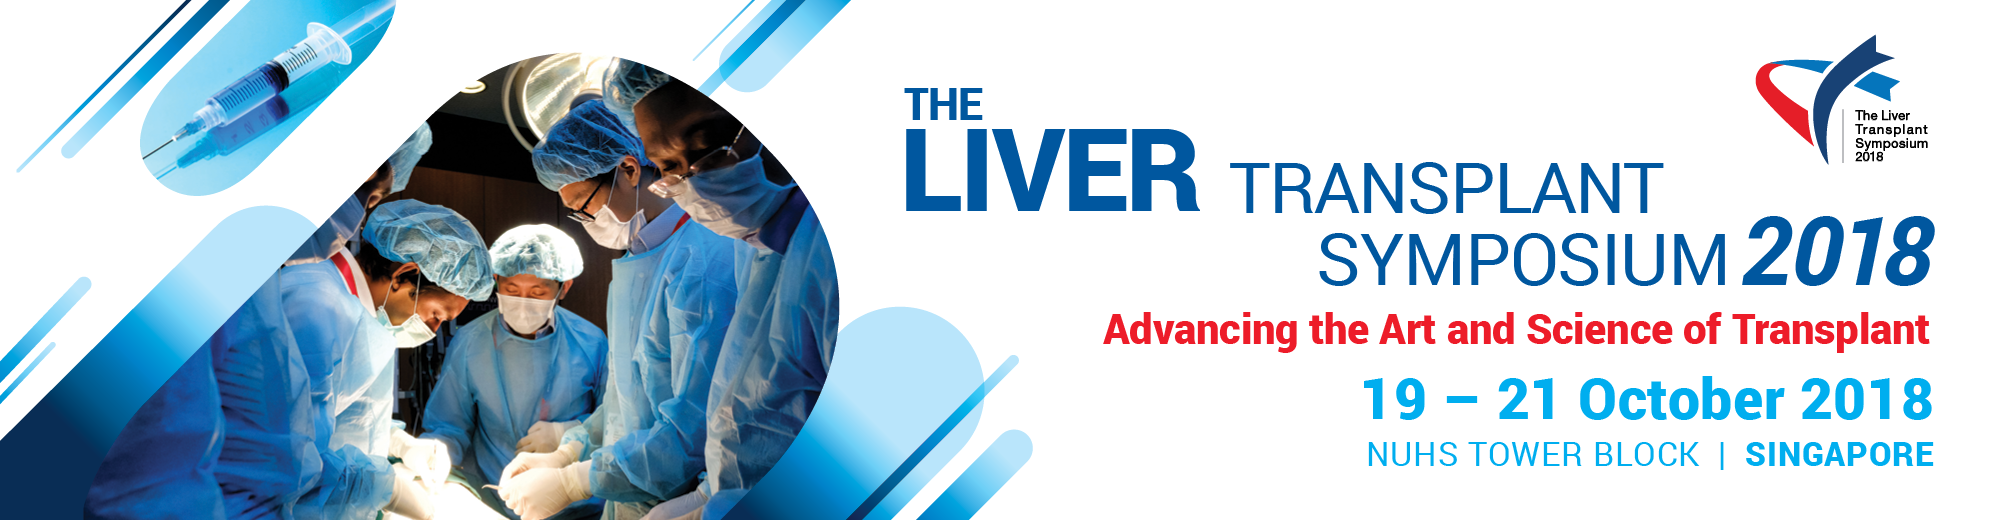 The Liver Transplant Symposium 2018, Singapore, South West, Singapore